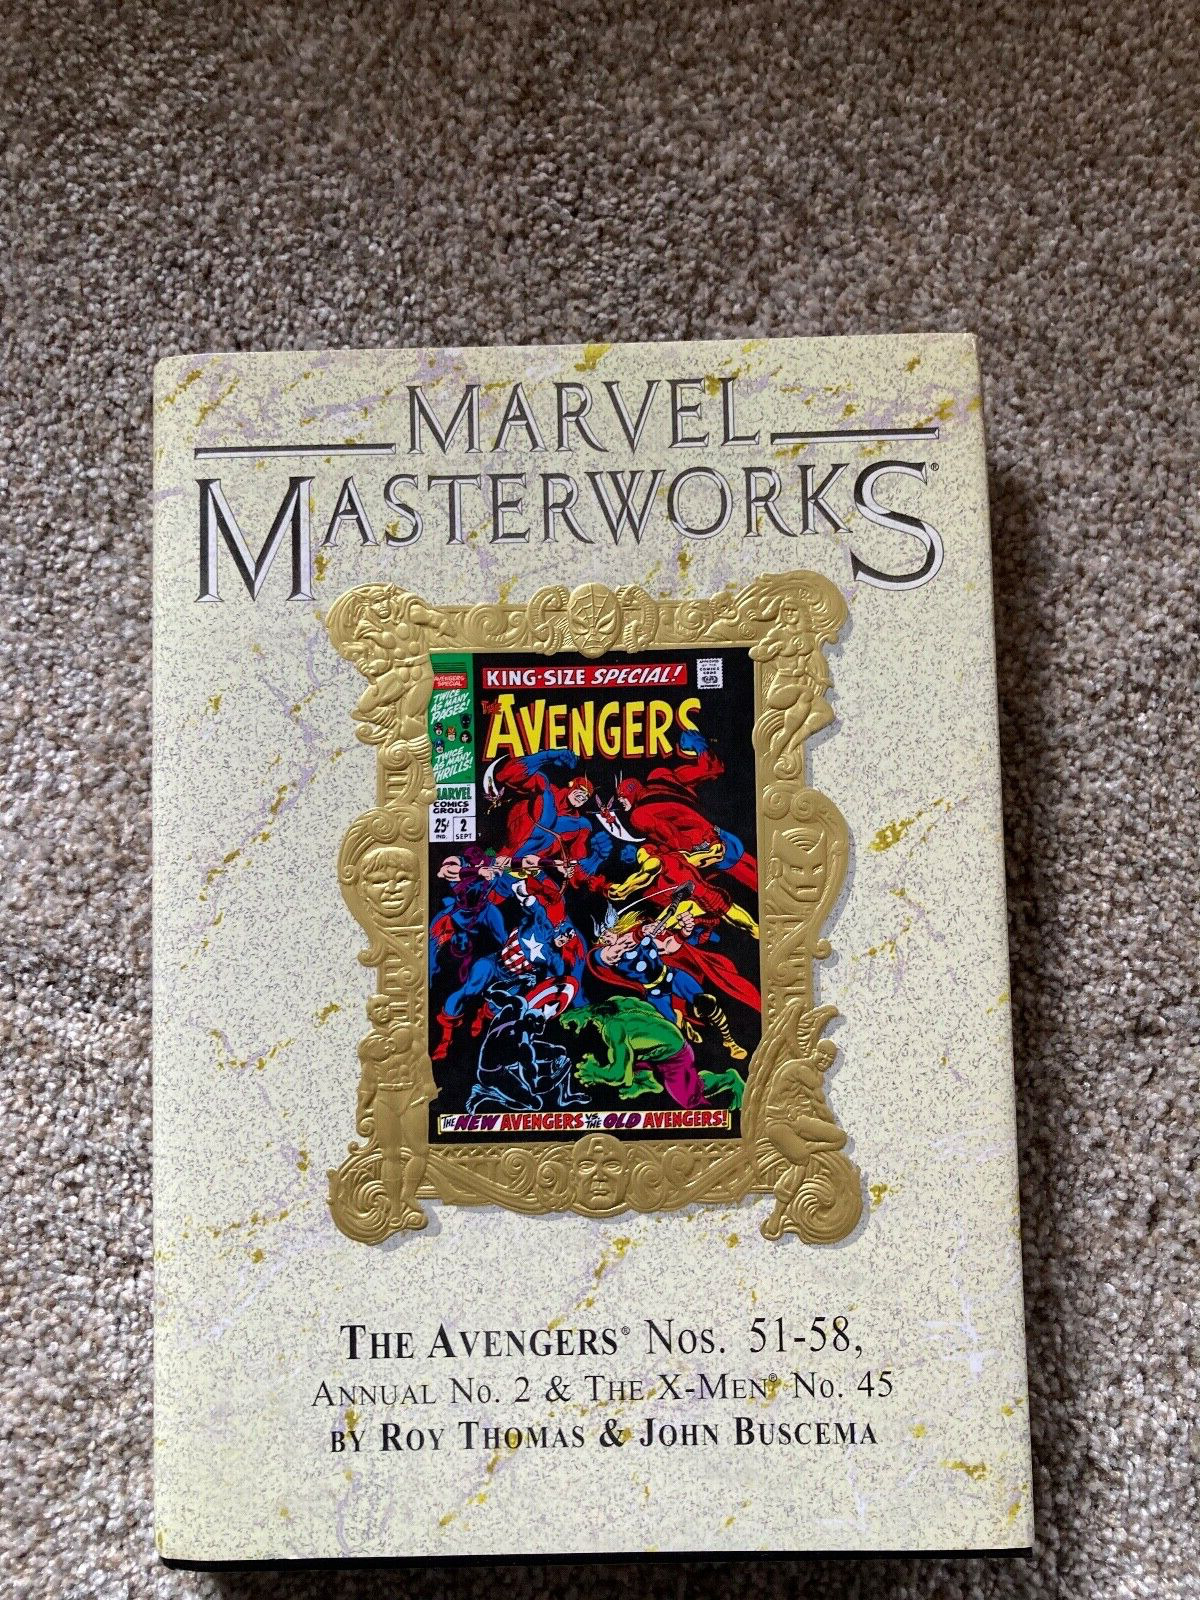 MARVEL MASTERWORKS #70, Deluxe/variant (Avengers #51-58 Volume 5 Hardcover)